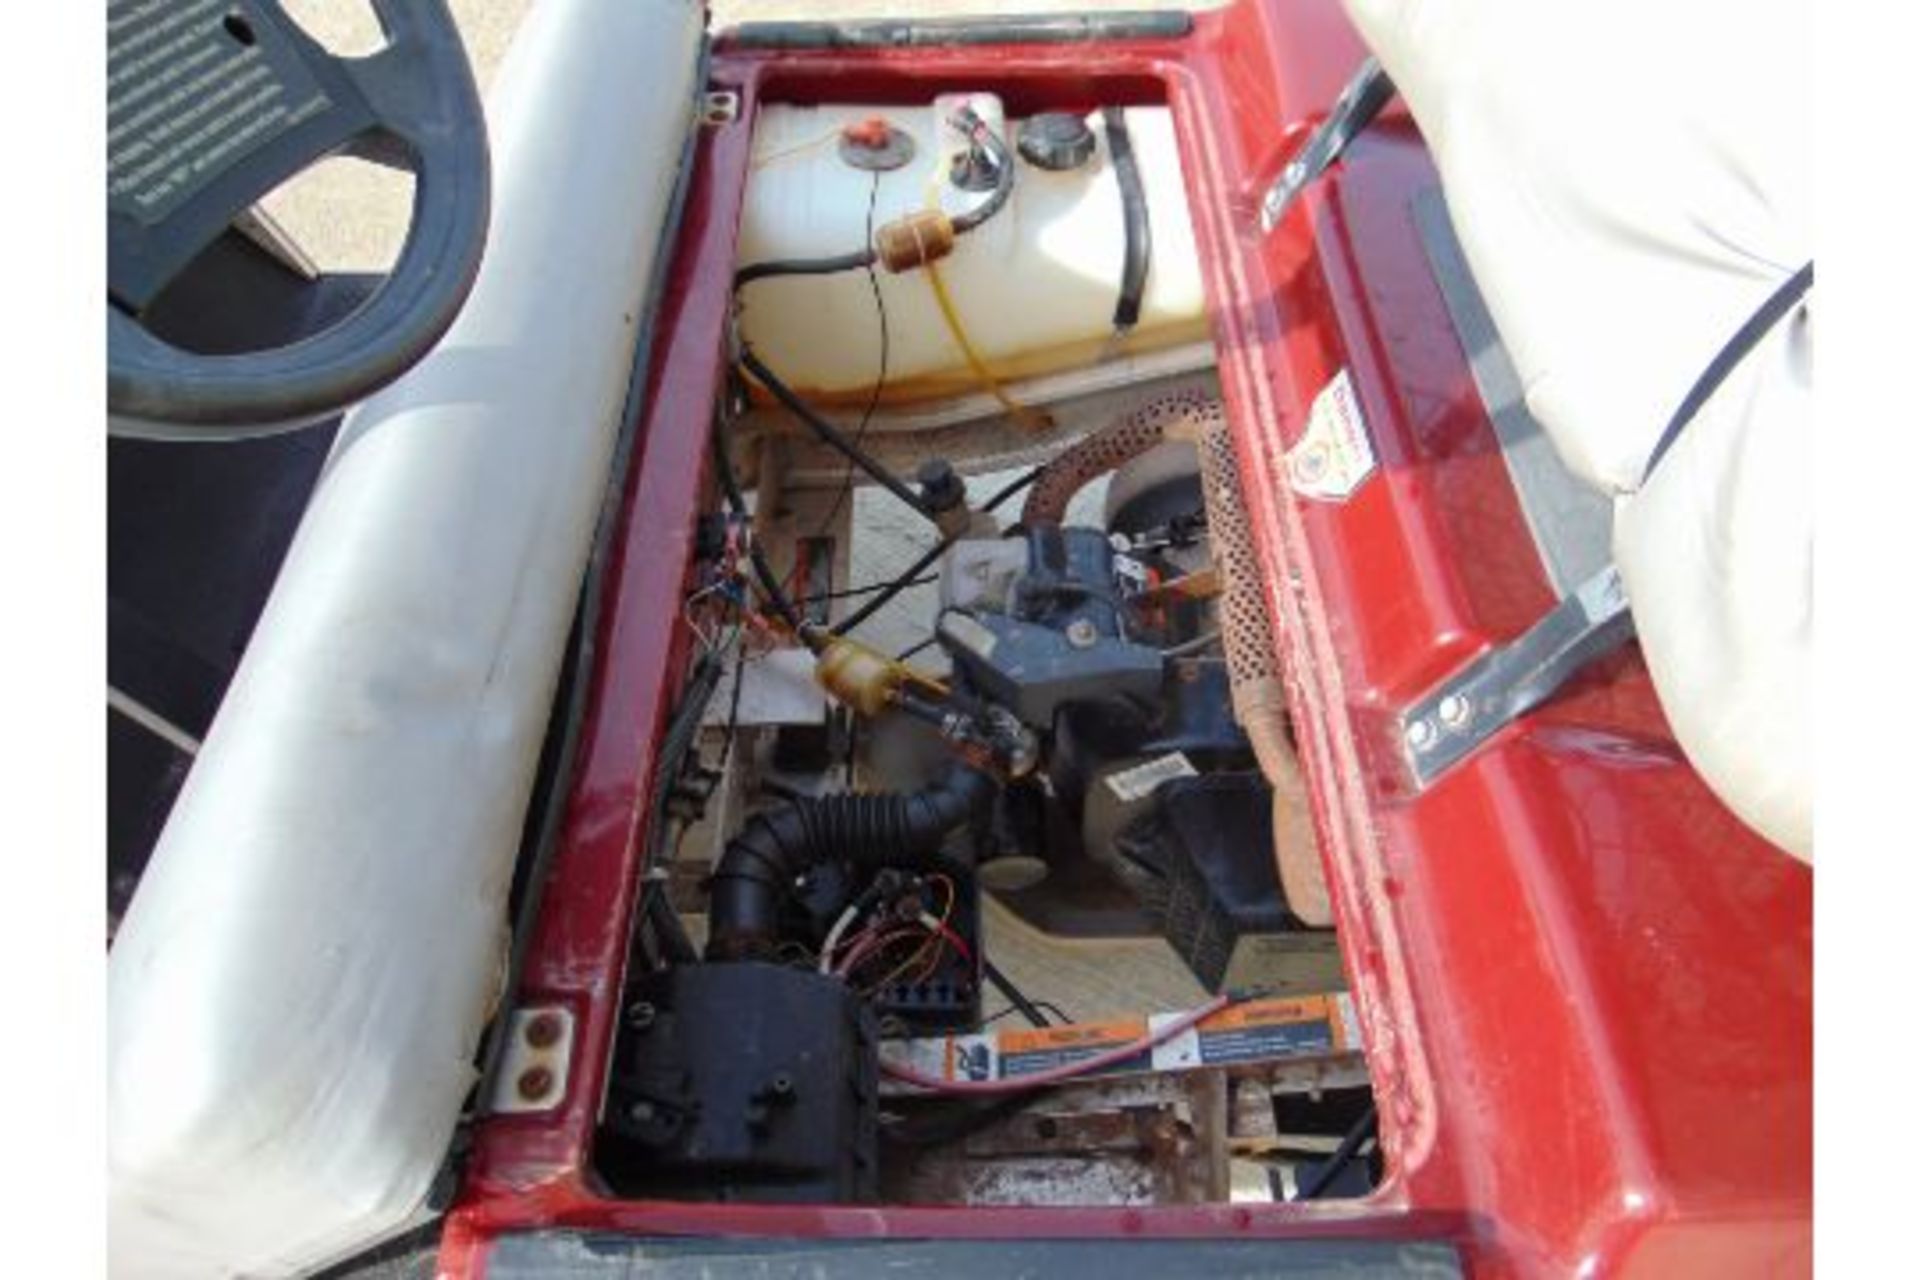 Club Car Golf Cart - Petrol Engine. - Image 13 of 16